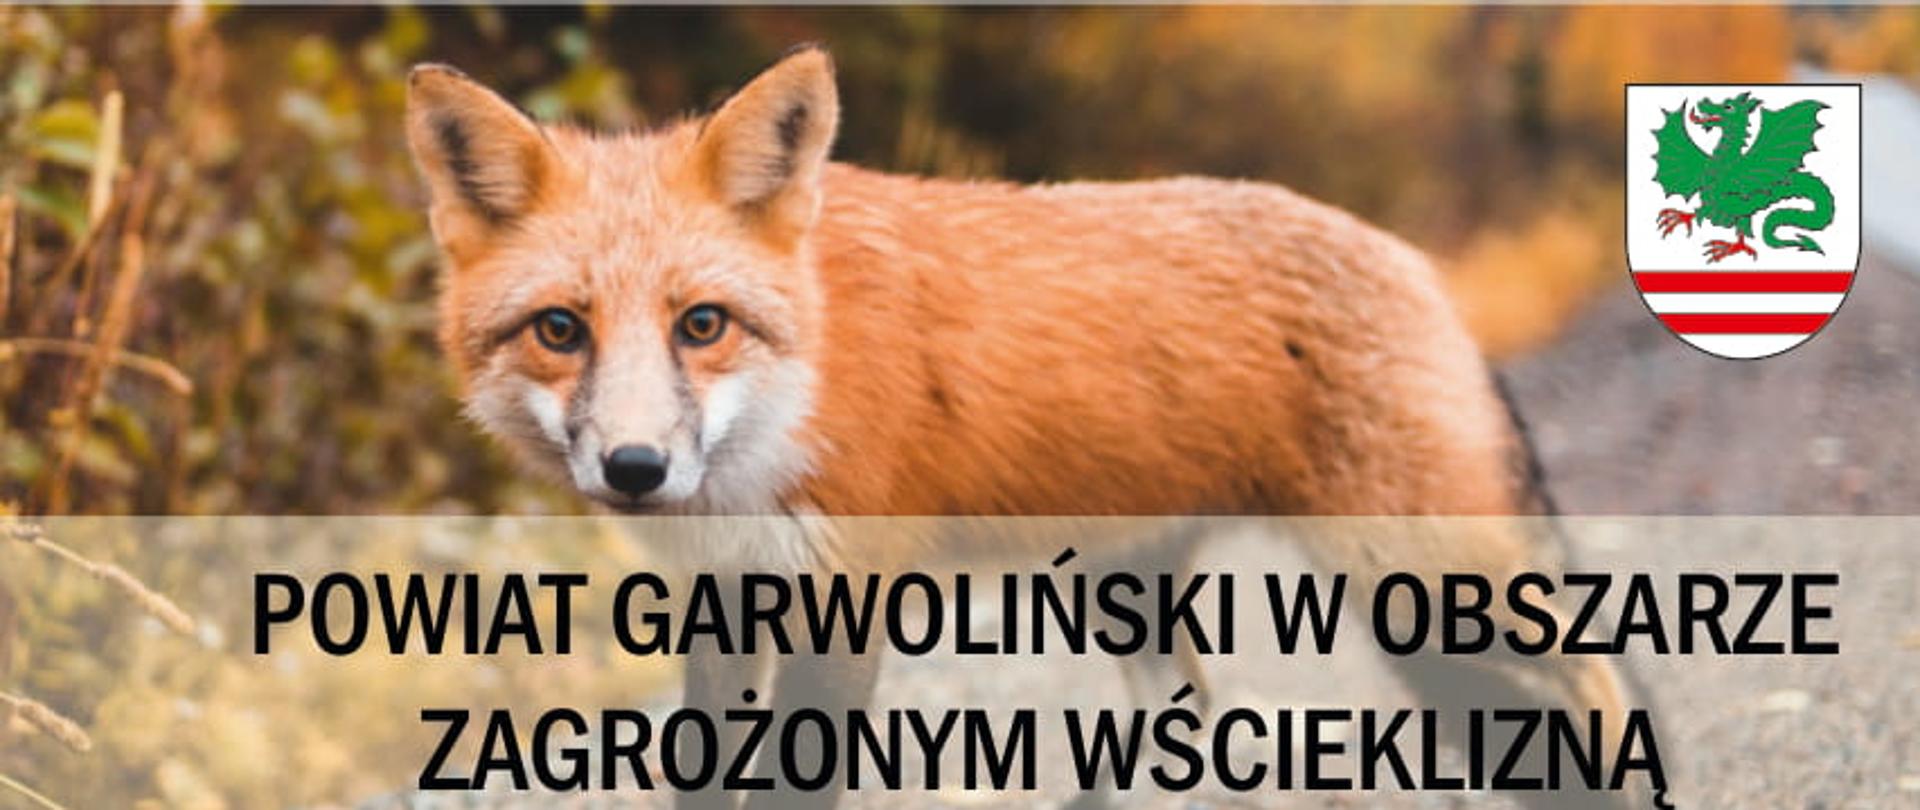 Informacja - Powiat Garwoliński zagrożony wścieklizną